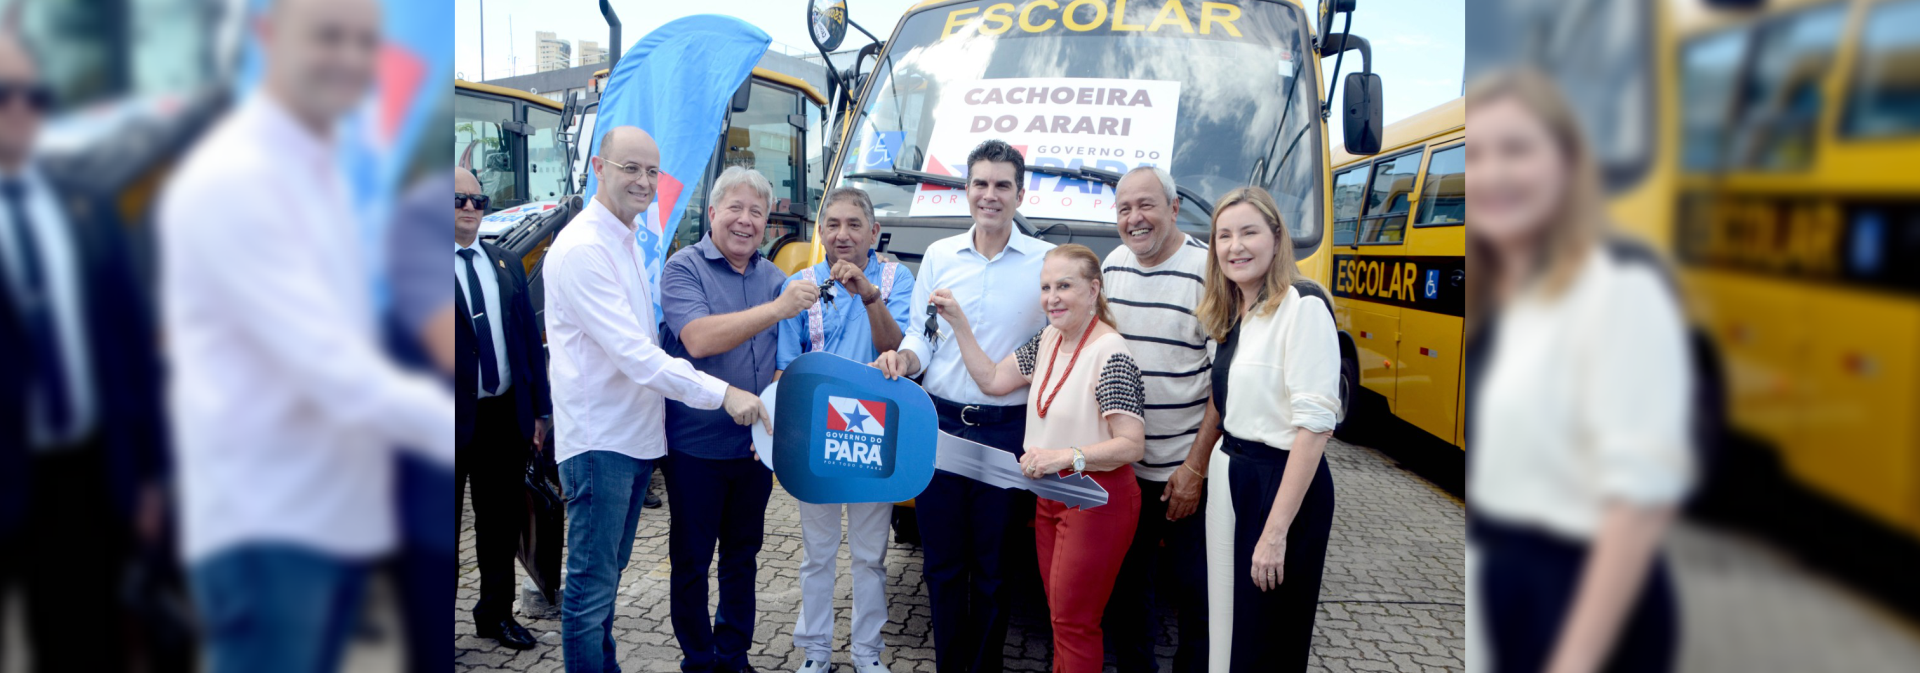 notícia: Em Belém, Governo do Estado entrega ônibus para 11 prefeituras paraenses